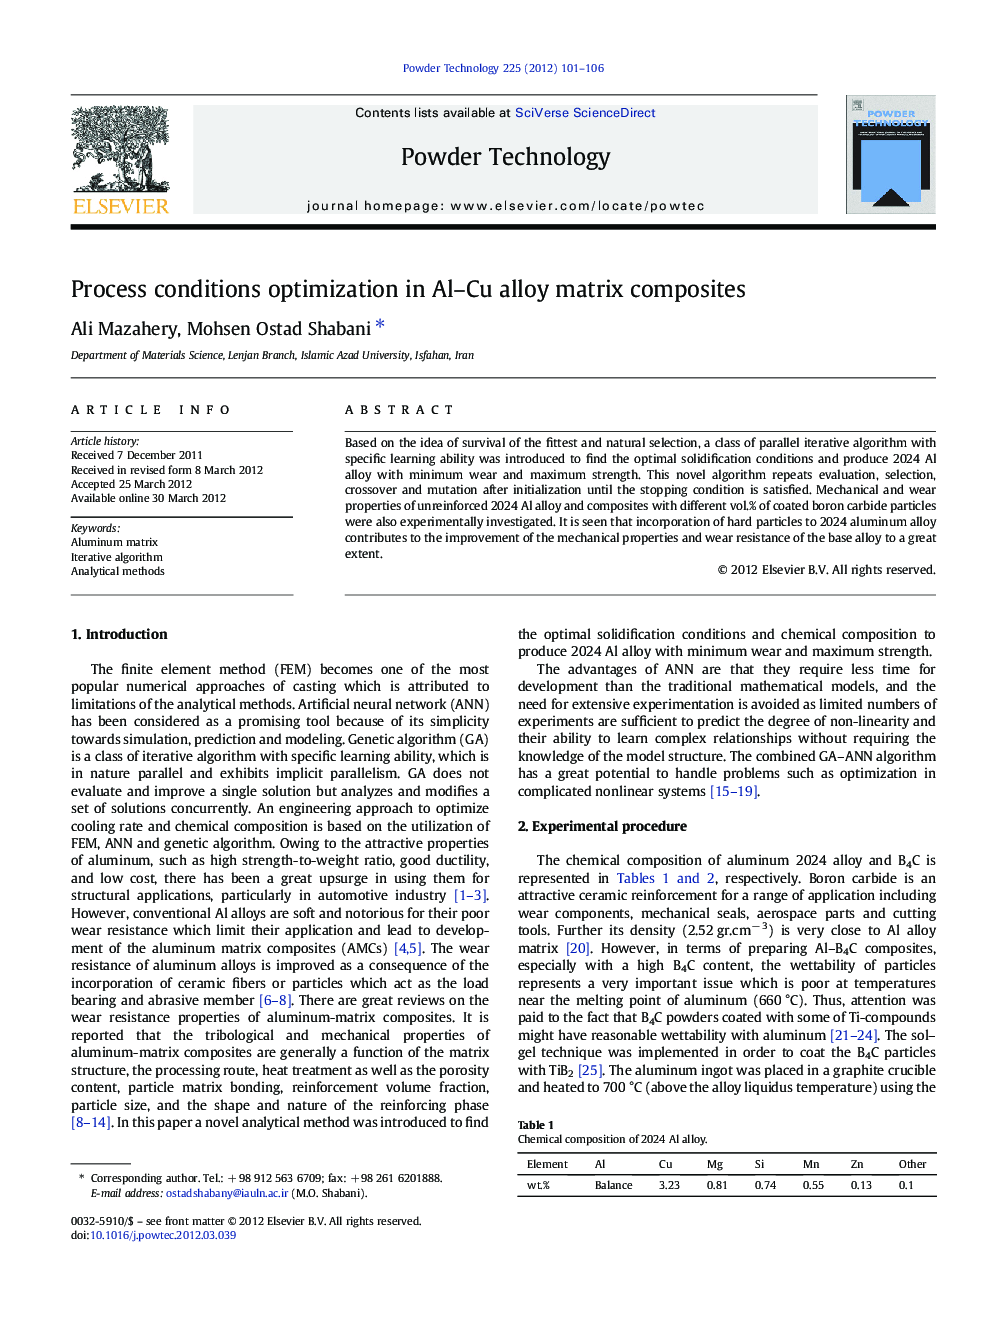 Process conditions optimization in Al–Cu alloy matrix composites